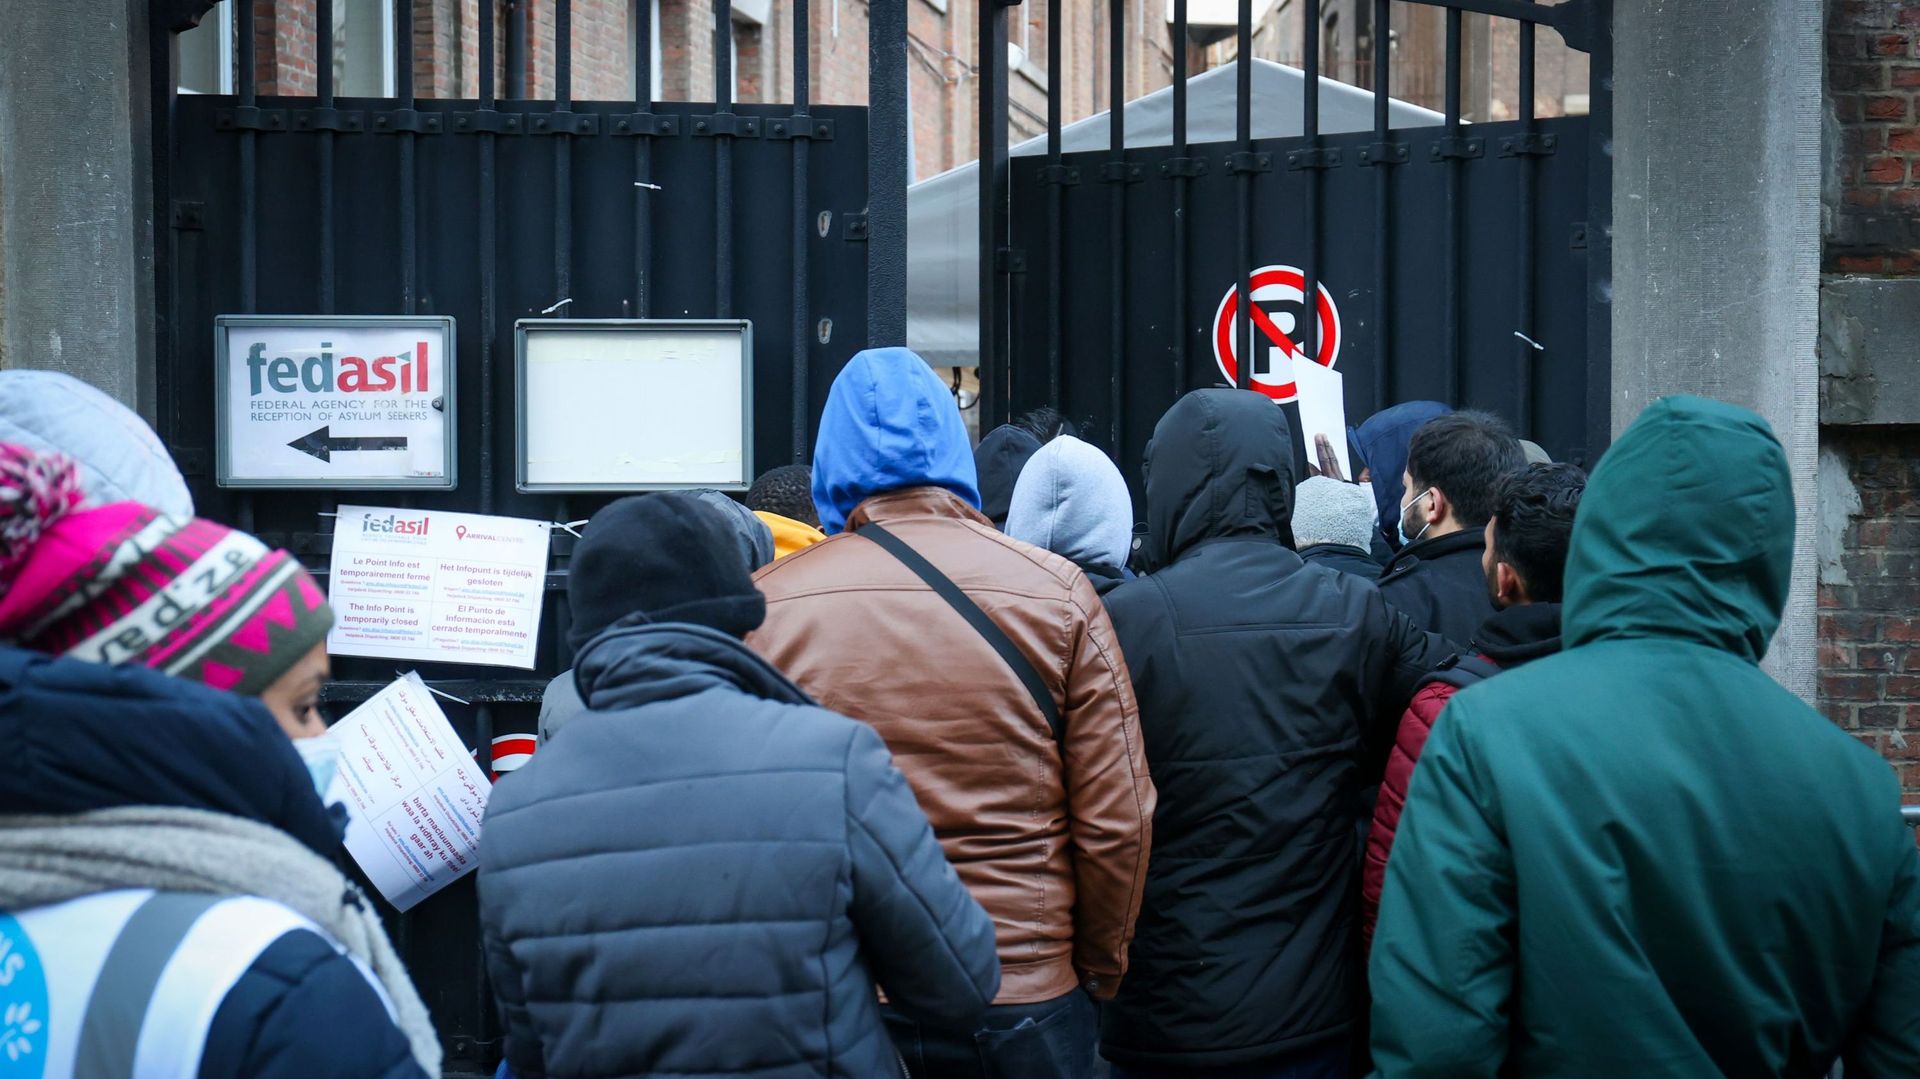  Des réfugiés attendent dehors, dans le froid, à l'entrée du centre d'enregistrement Fedasil pour demandeurs d'asile "Petit Château" à Bruxelles, mardi 07 décembre 2021.